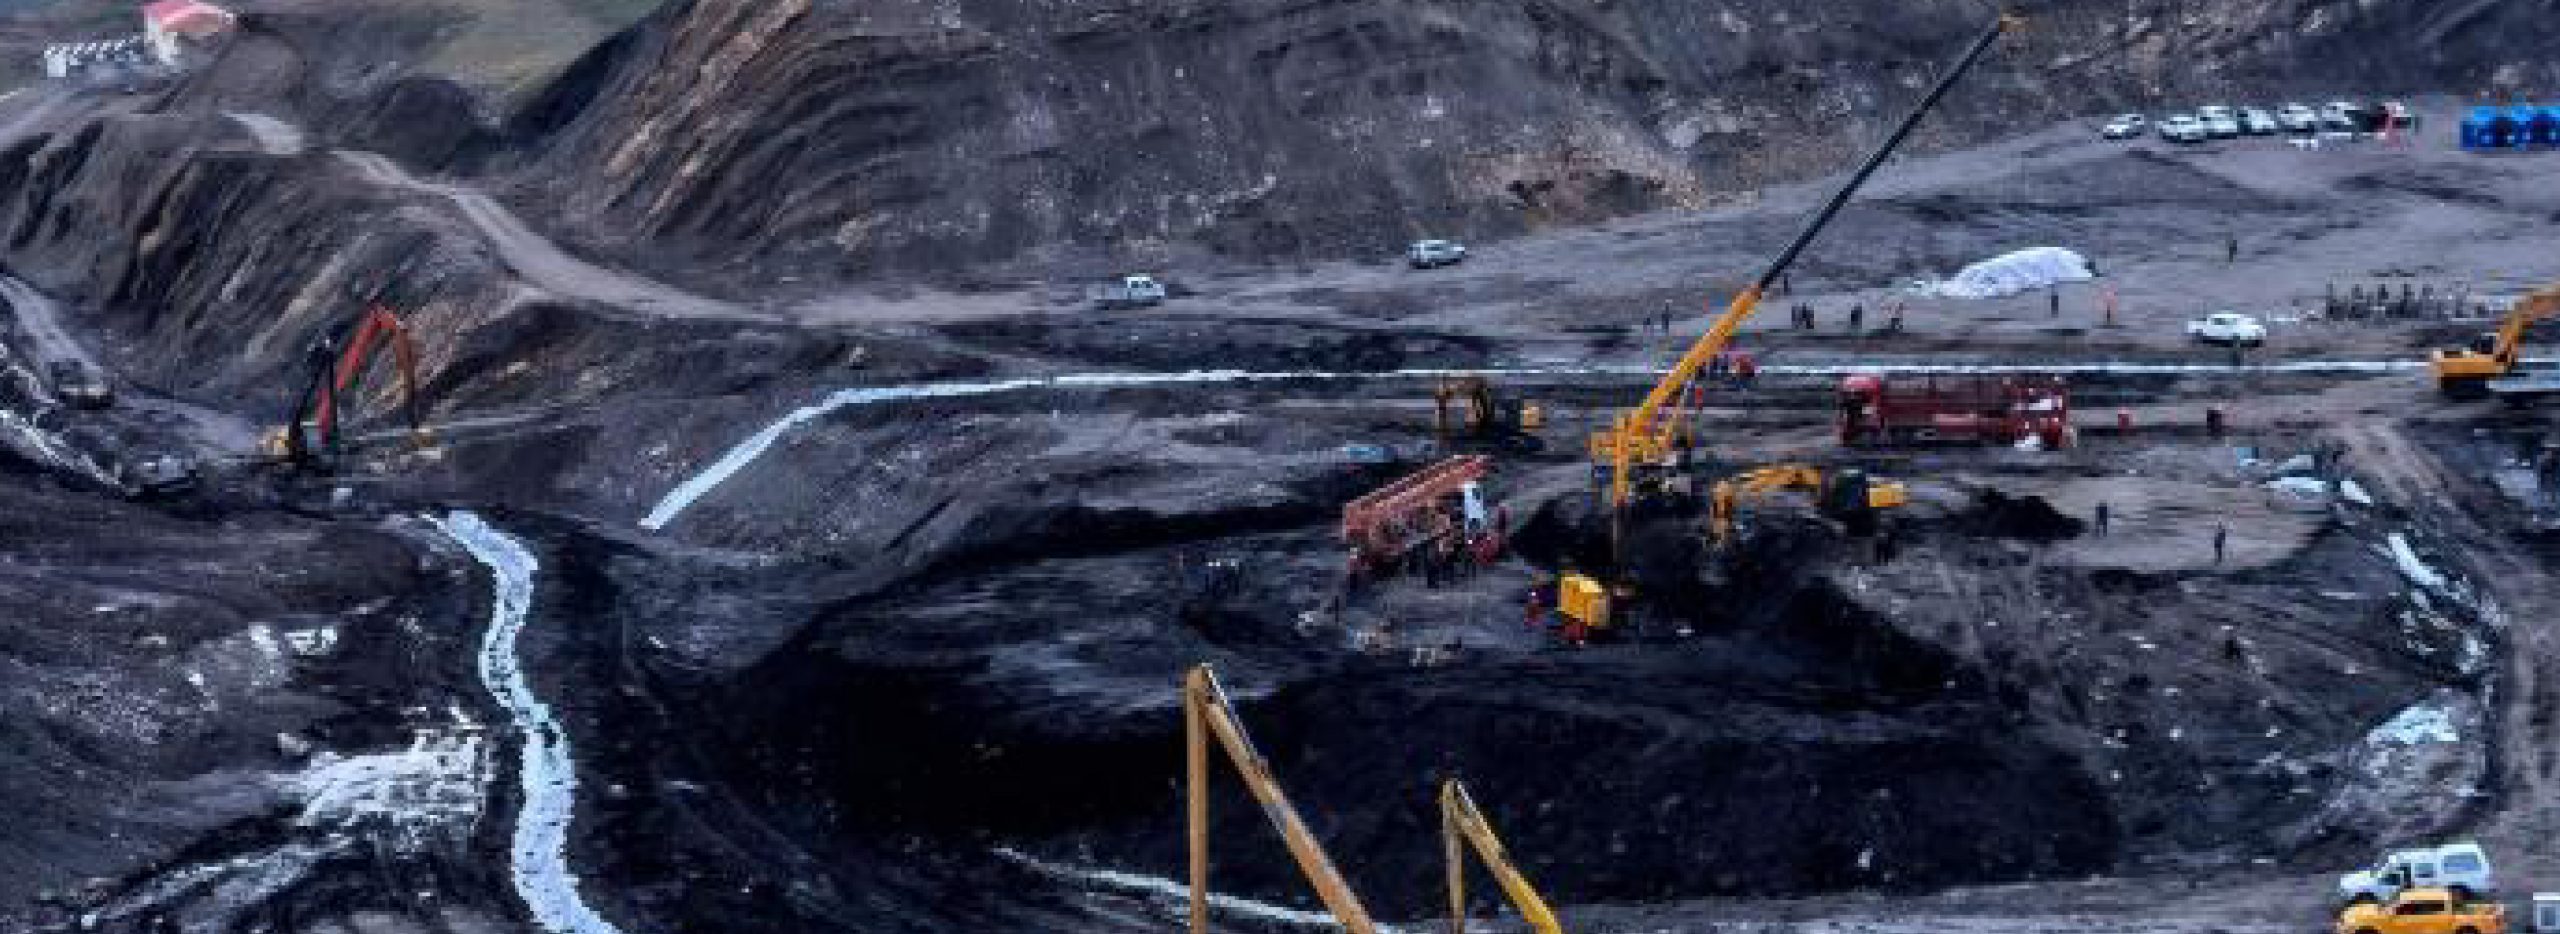 2021青海海北州西海煤炭开发有限责任公司柴达尔煤矿8·14顶板抽冒导致溃砂溃泥重大事故